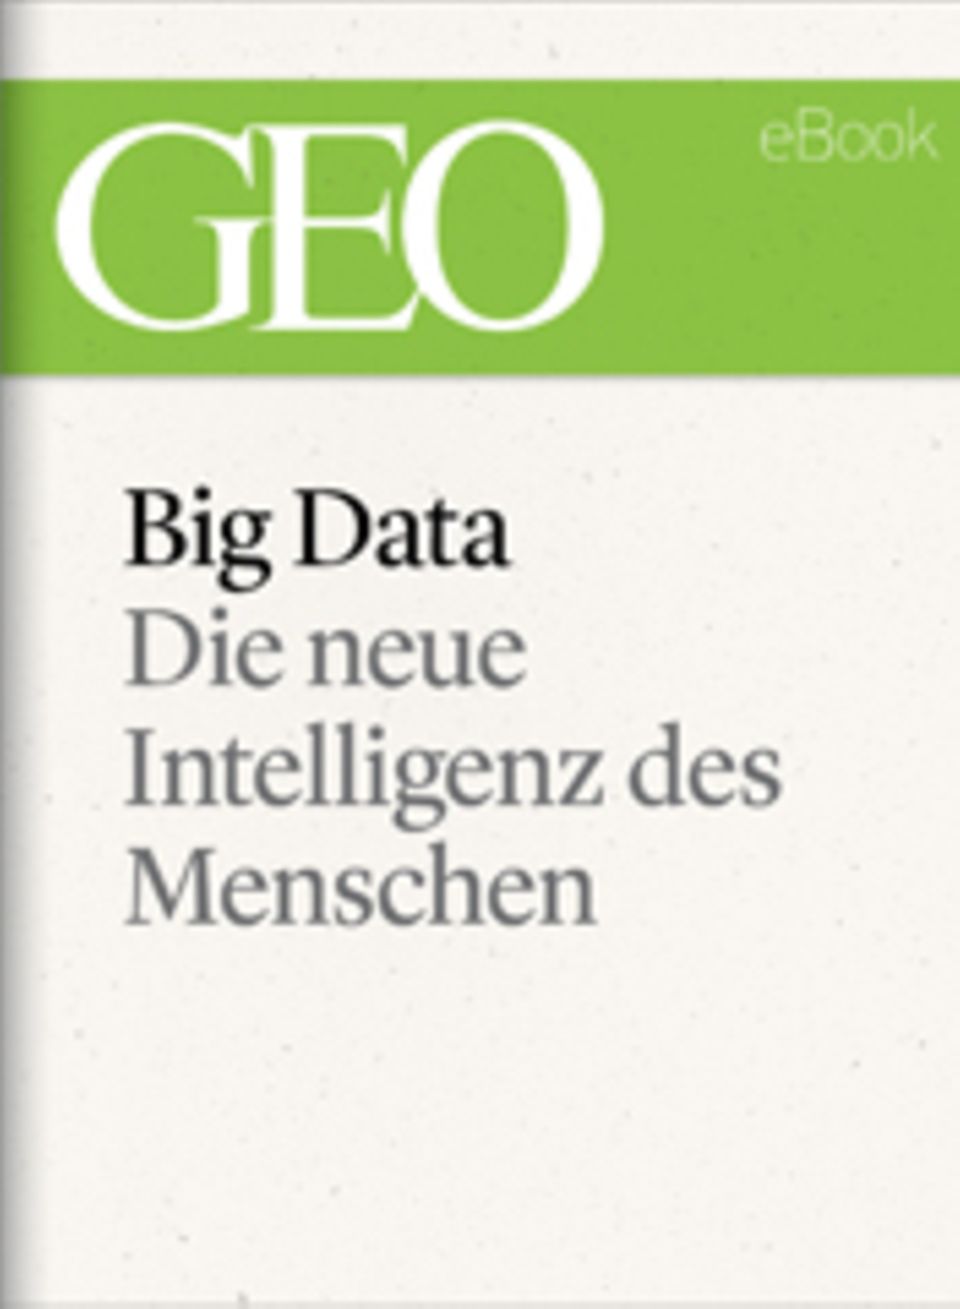 Die neue Intelligenz des Menschen: GEO eBook "Big Data"